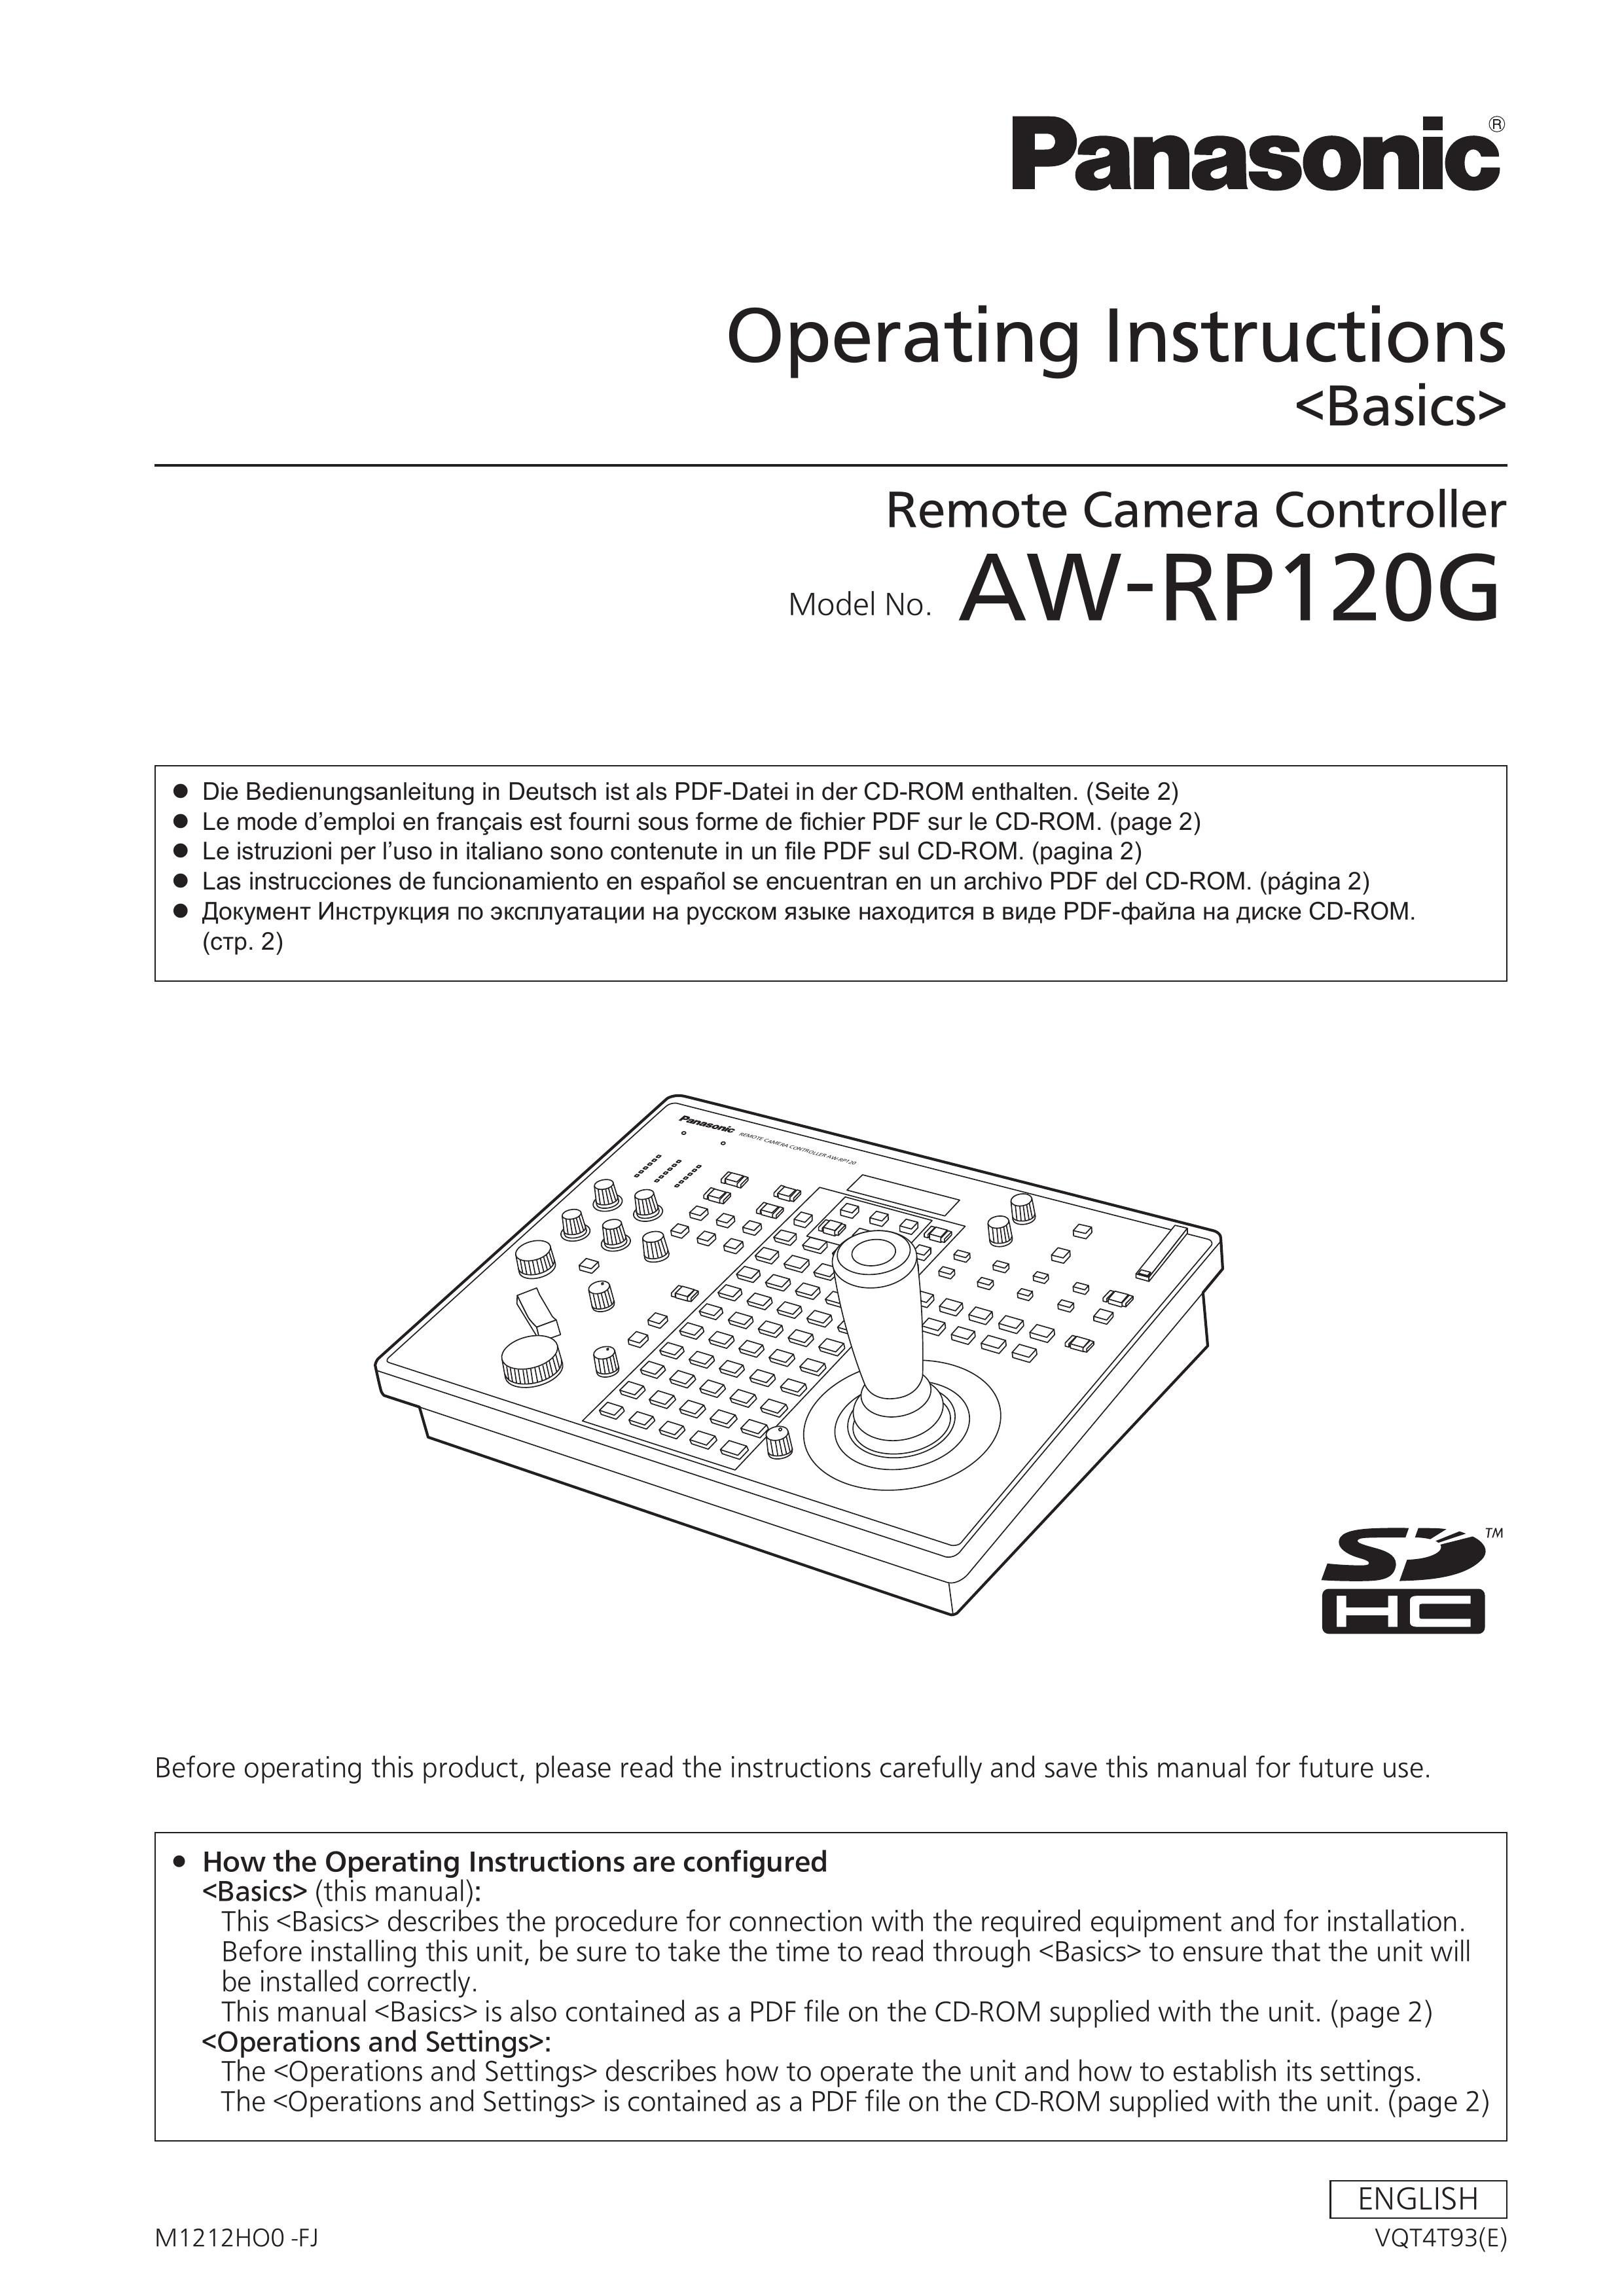 Panasonic AW-RP120G Security Camera User Manual